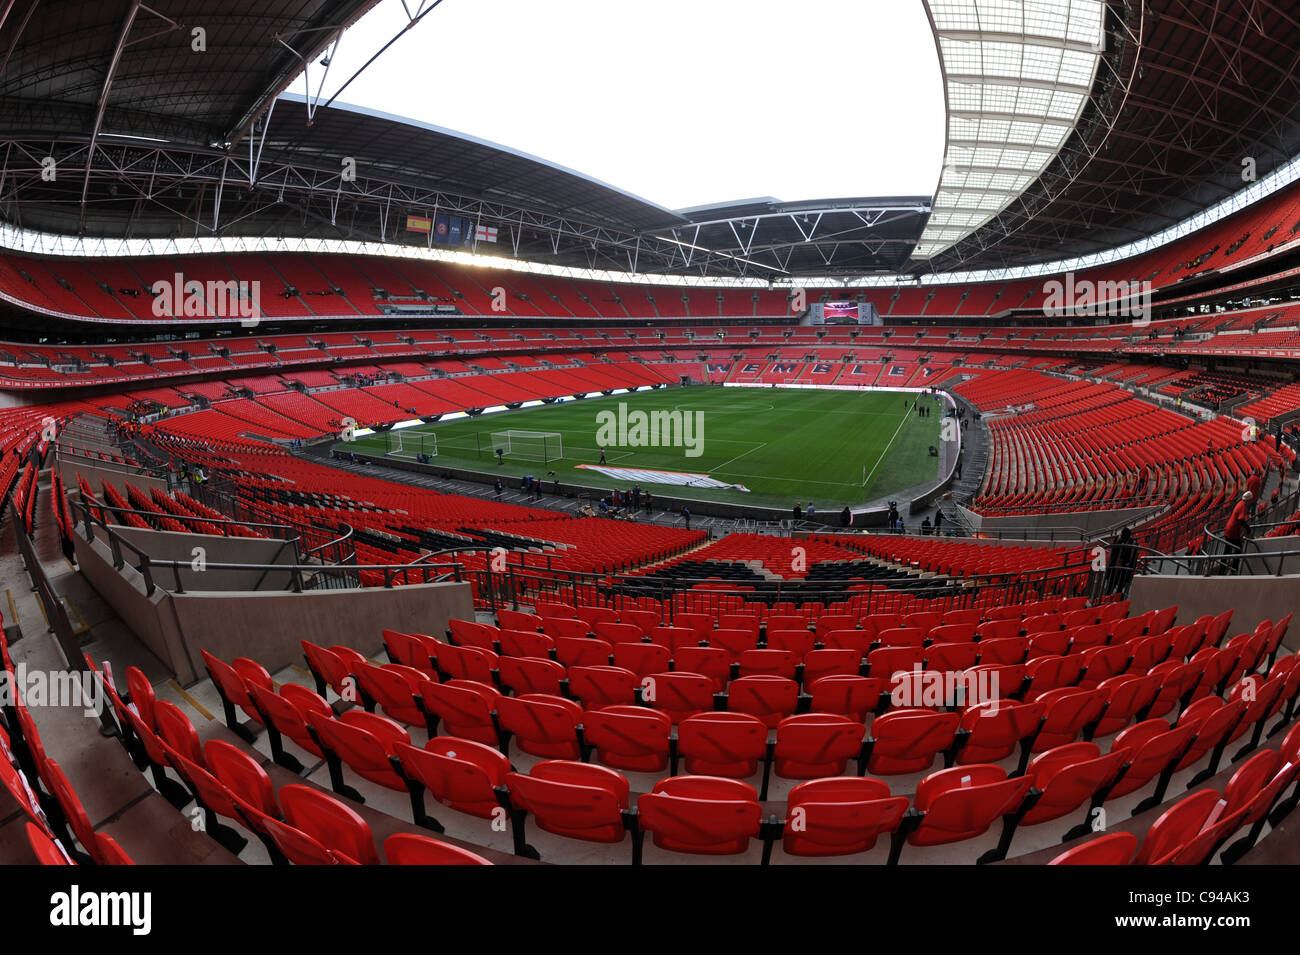 Blick ins Innere Wembley Stadium, London, England. Das englische Nationalstadion & die Heimat der englische Fußballverband oder FA Stockfoto